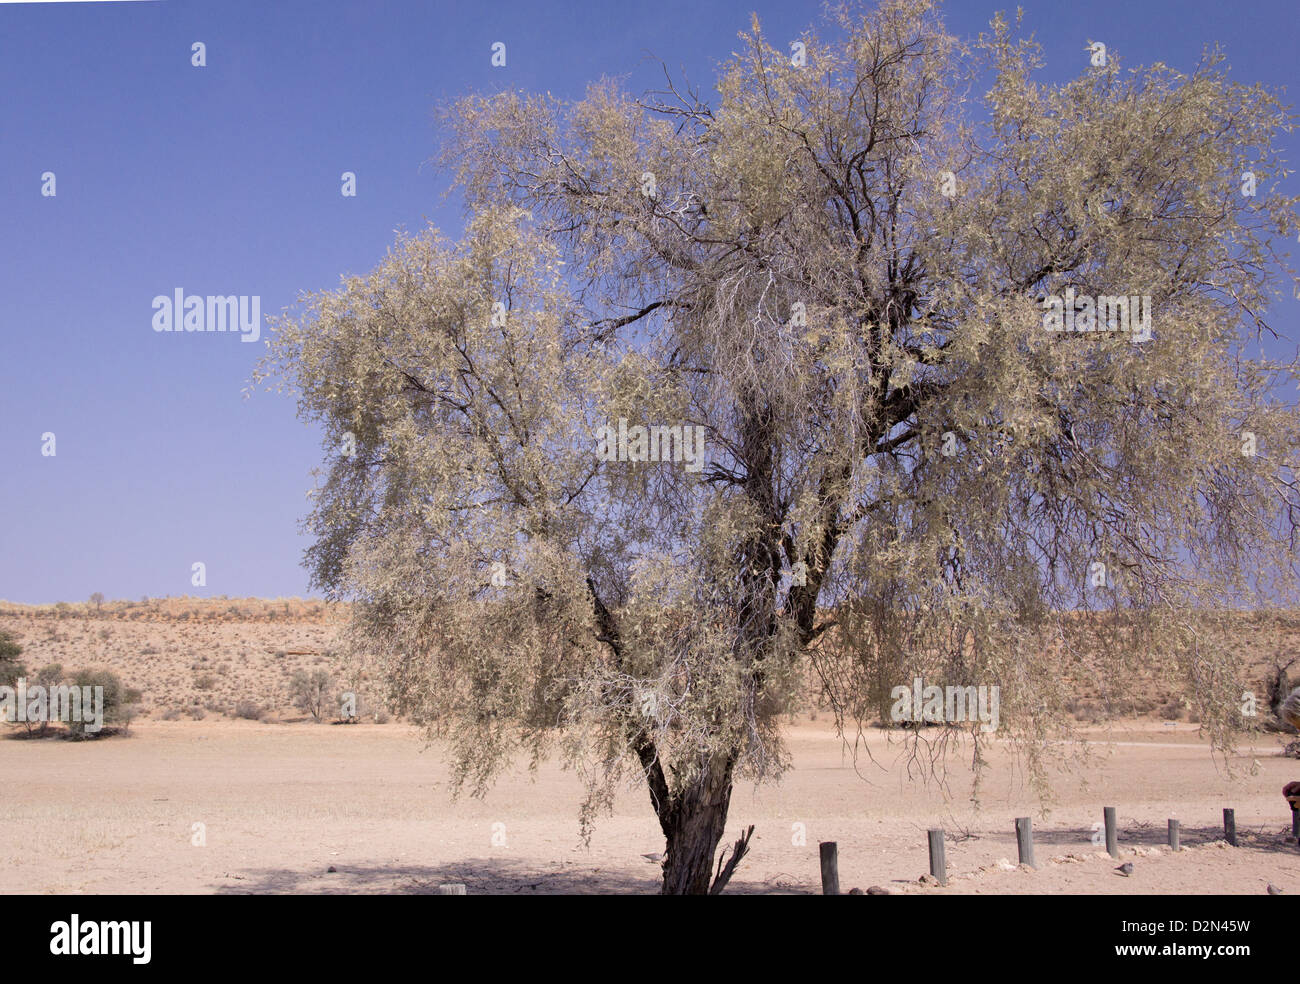 Camel thorn (Acacia erioloba) in the Kalahari Desert, South Africa Stock Photo